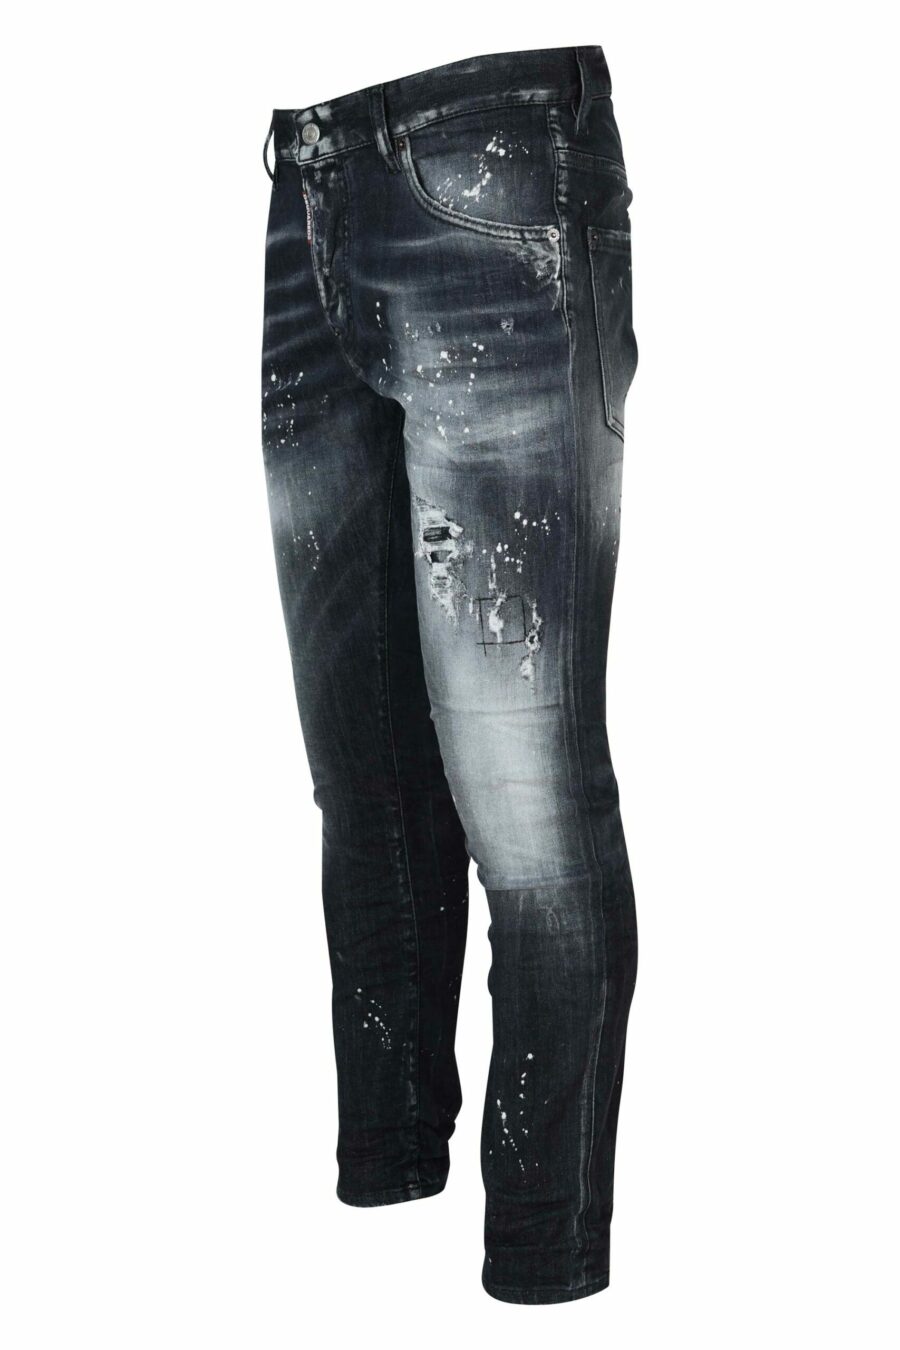 Schwarze "Skater-Jeans" mit Rissen und Zerrissenem - 8054148474126 1 skaliert